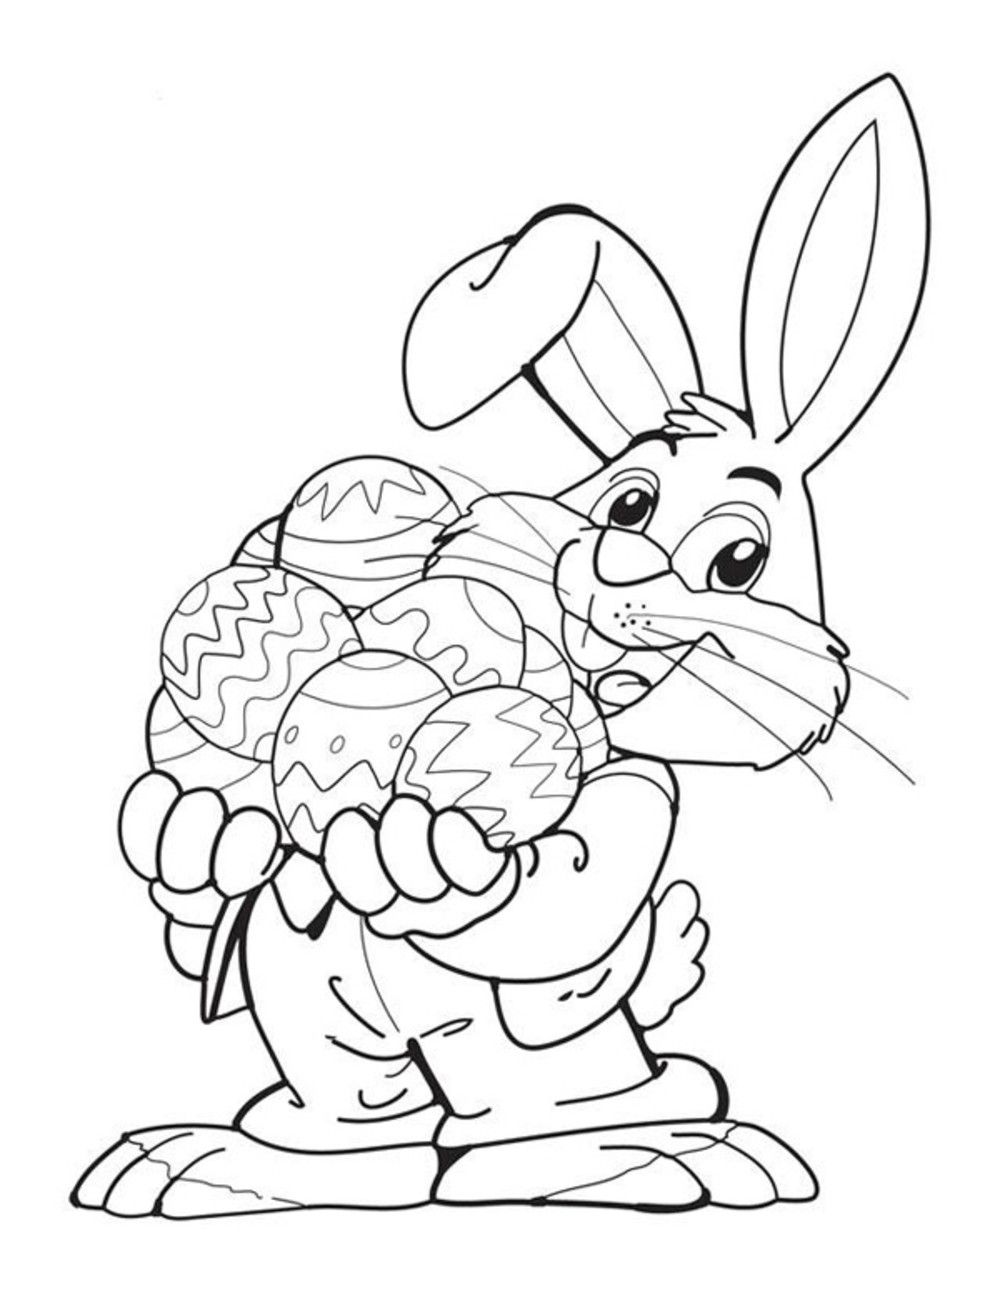 一只复活节兔子手里拿着一串彩蛋。